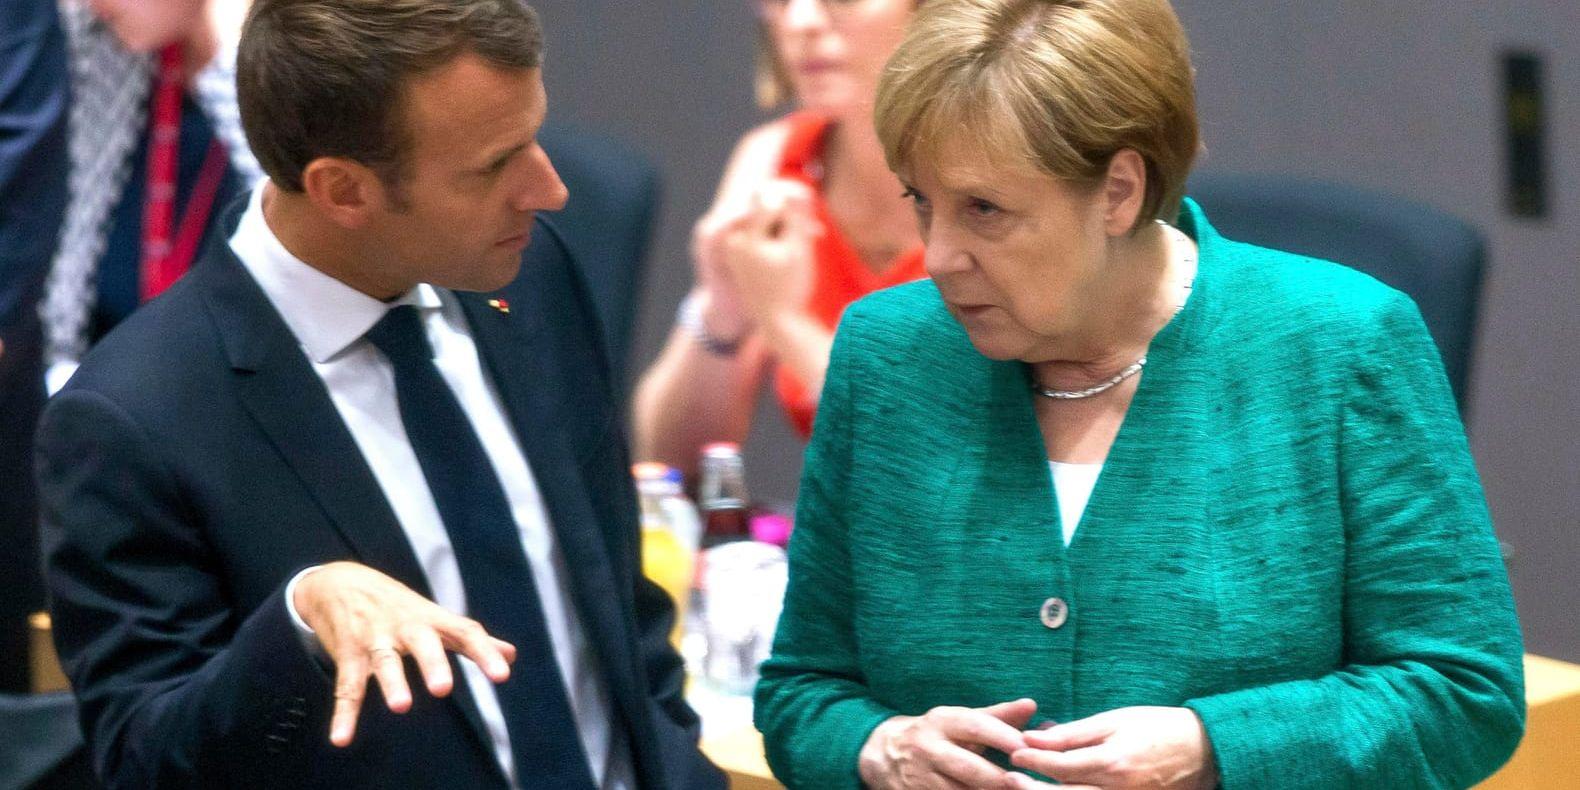 Frankrikes president Emmanuel Macron och Tysklands förbundskansler Angela Merkel under toppmötet i Bryssel.